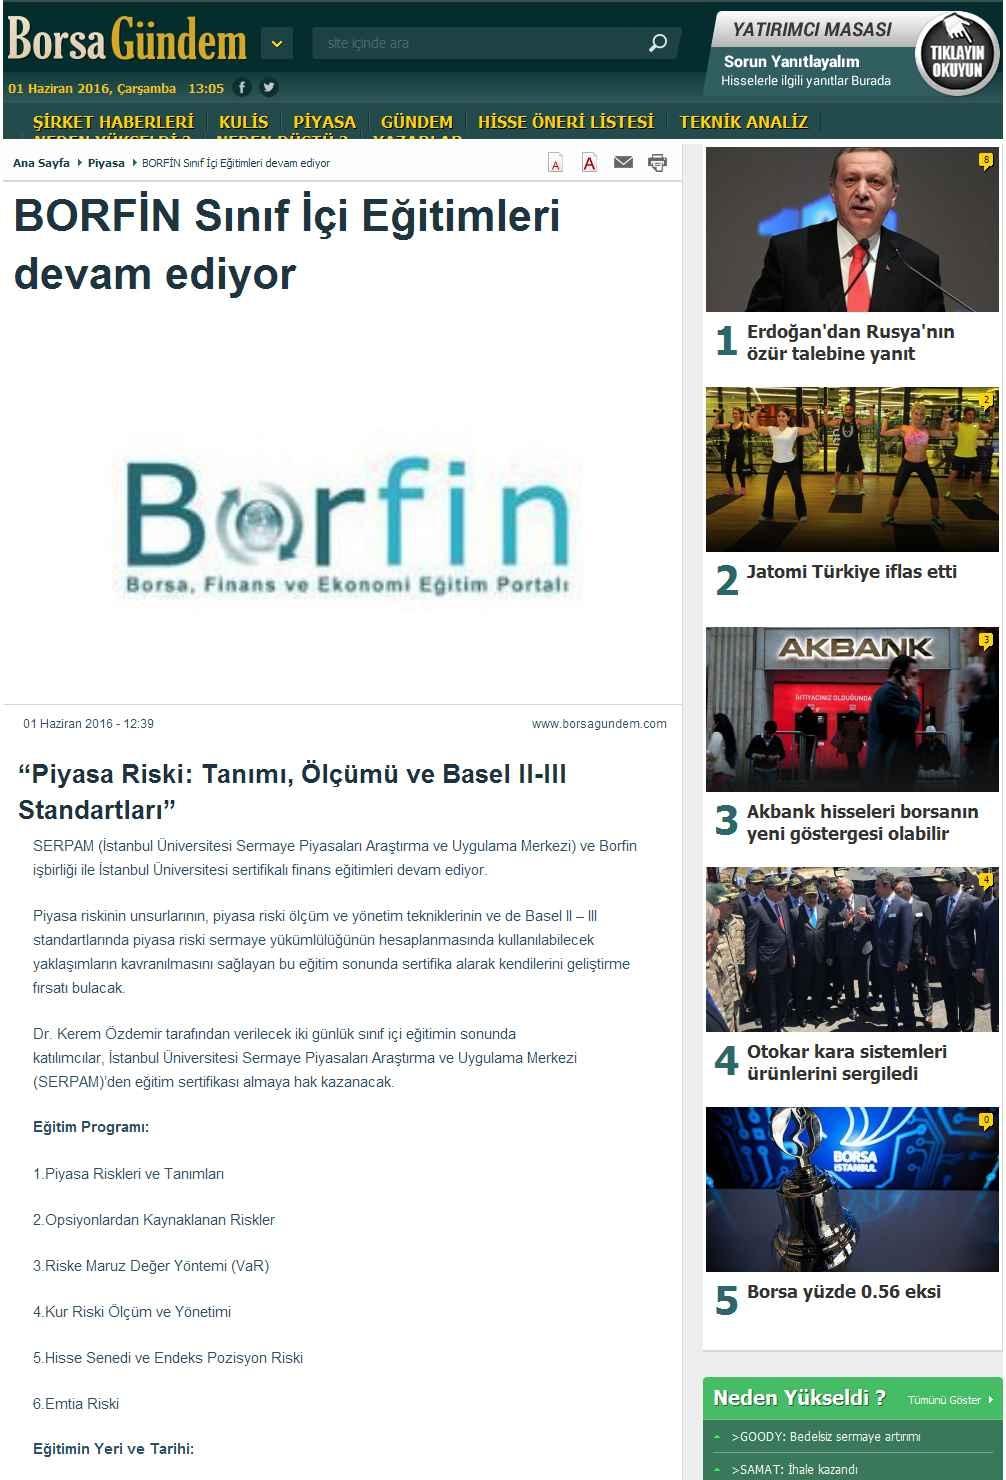 Portal Adres BORFIN SINIF IÇI EGITIMLERI DEVAM EDIYOR : www.borsagundem.